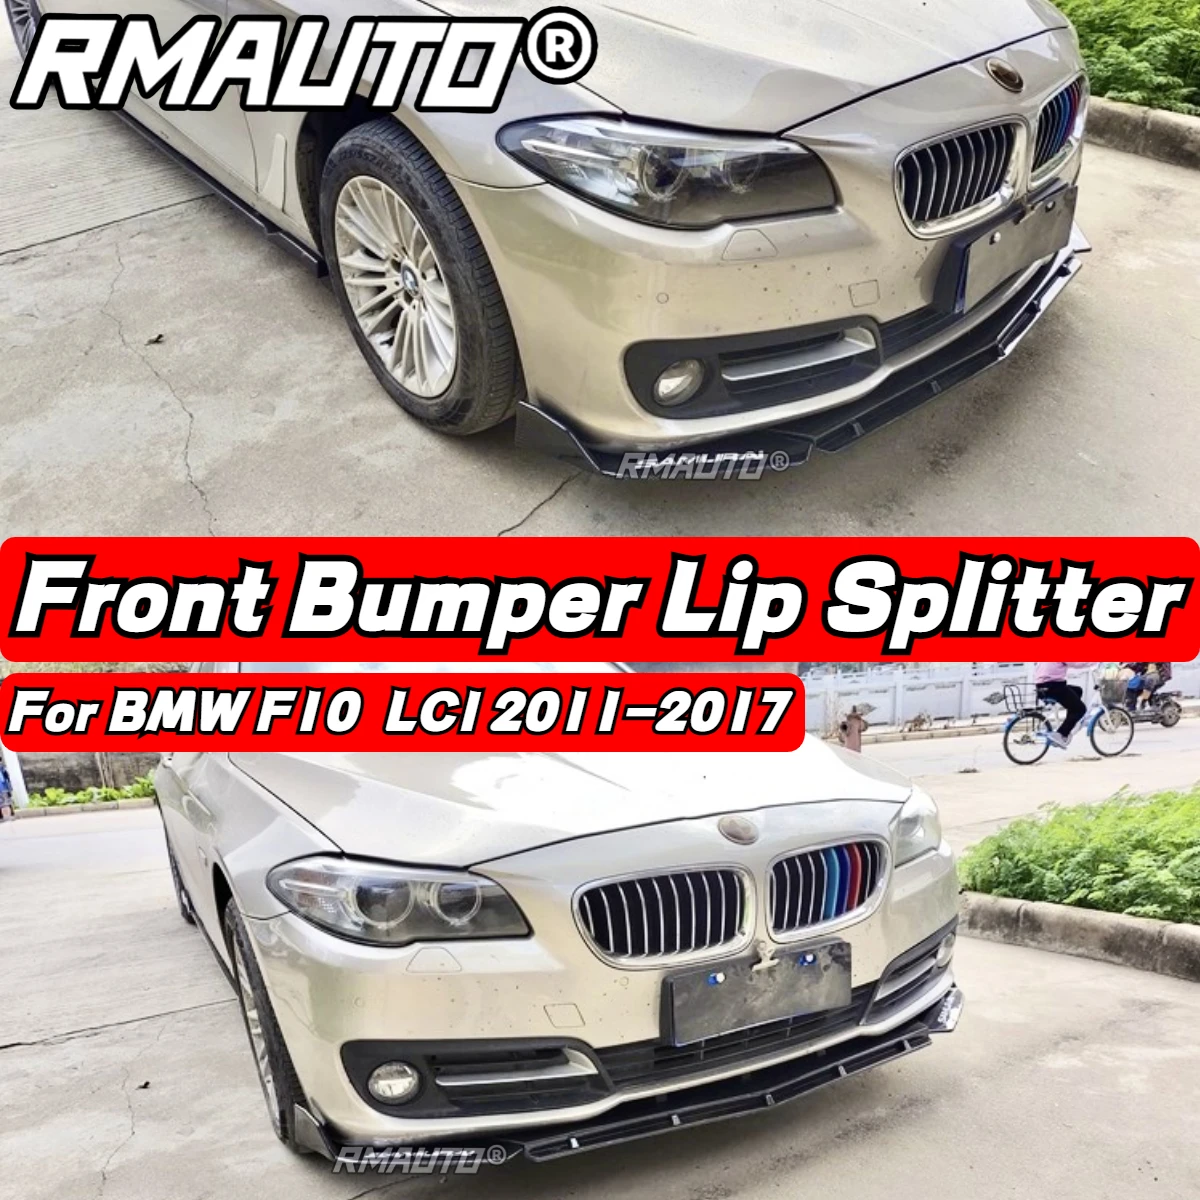 

Передний бампер F10, сплиттер для переднего бампера, спойлер, диффузор, защита Бампера, комплект для корпуса BMW F10 LCI 2011-2017, автомобильные аксессуары